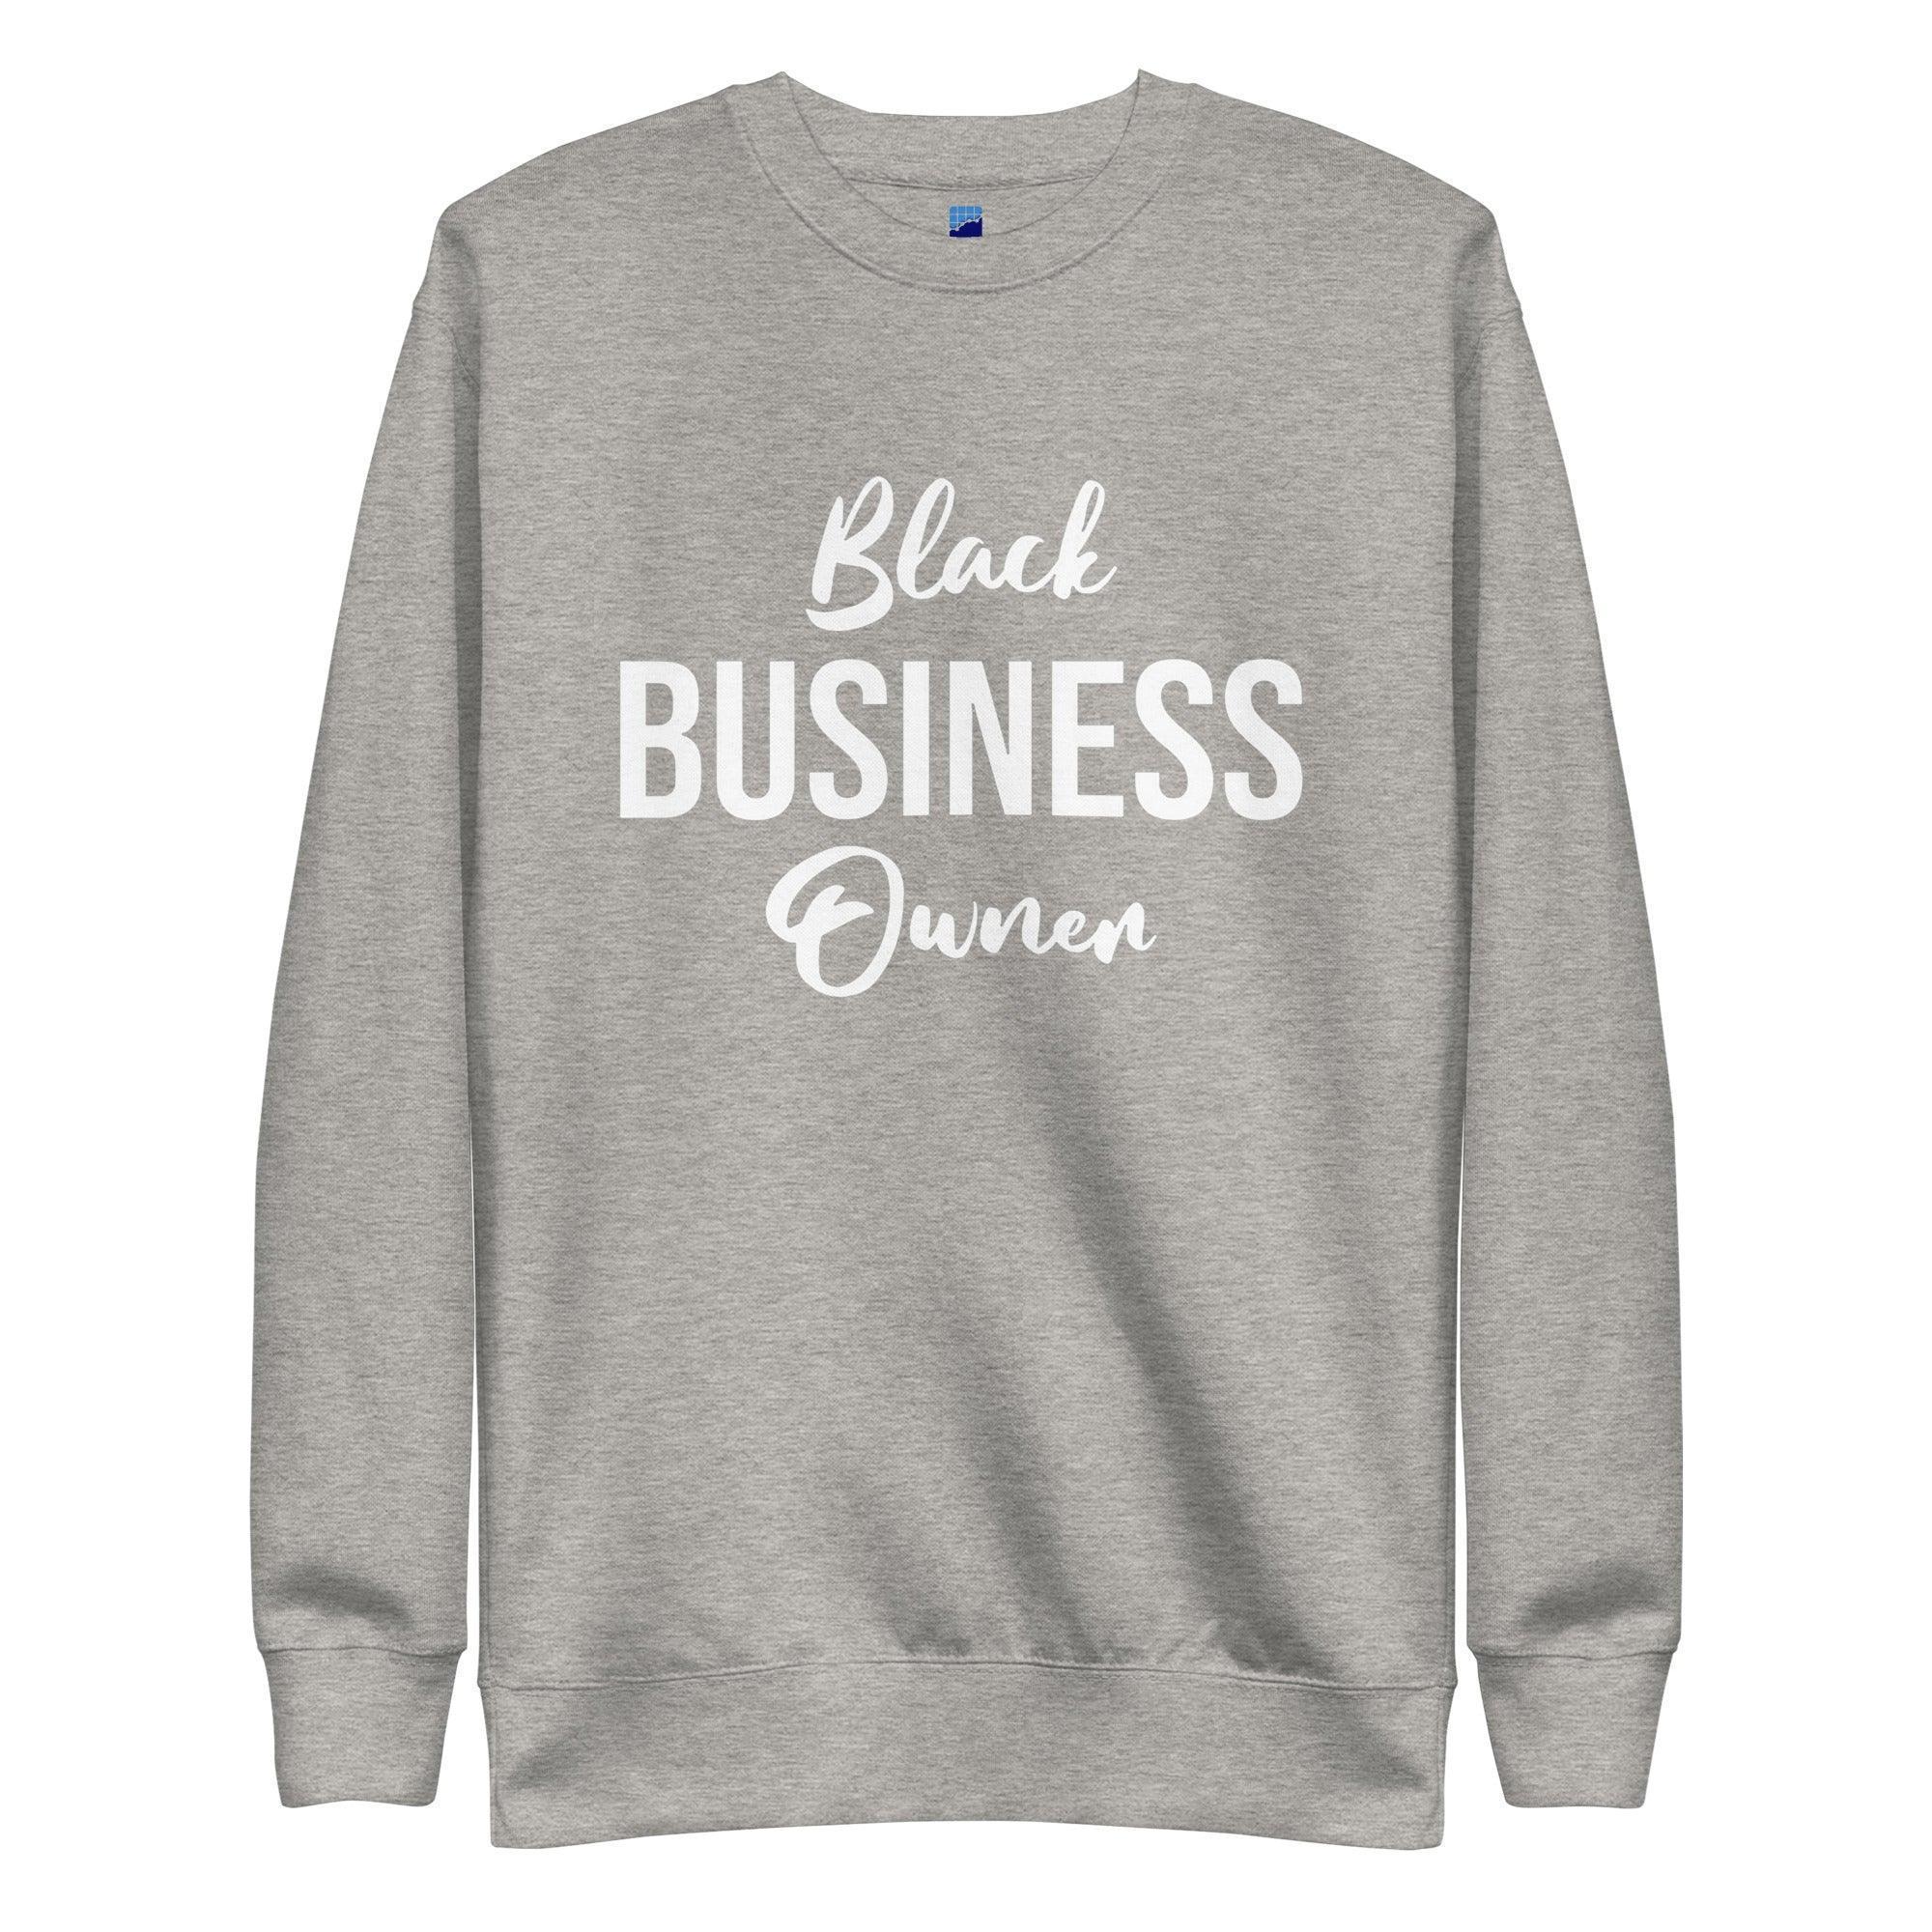 Black Business Owner Sweatshirt - InvestmenTees